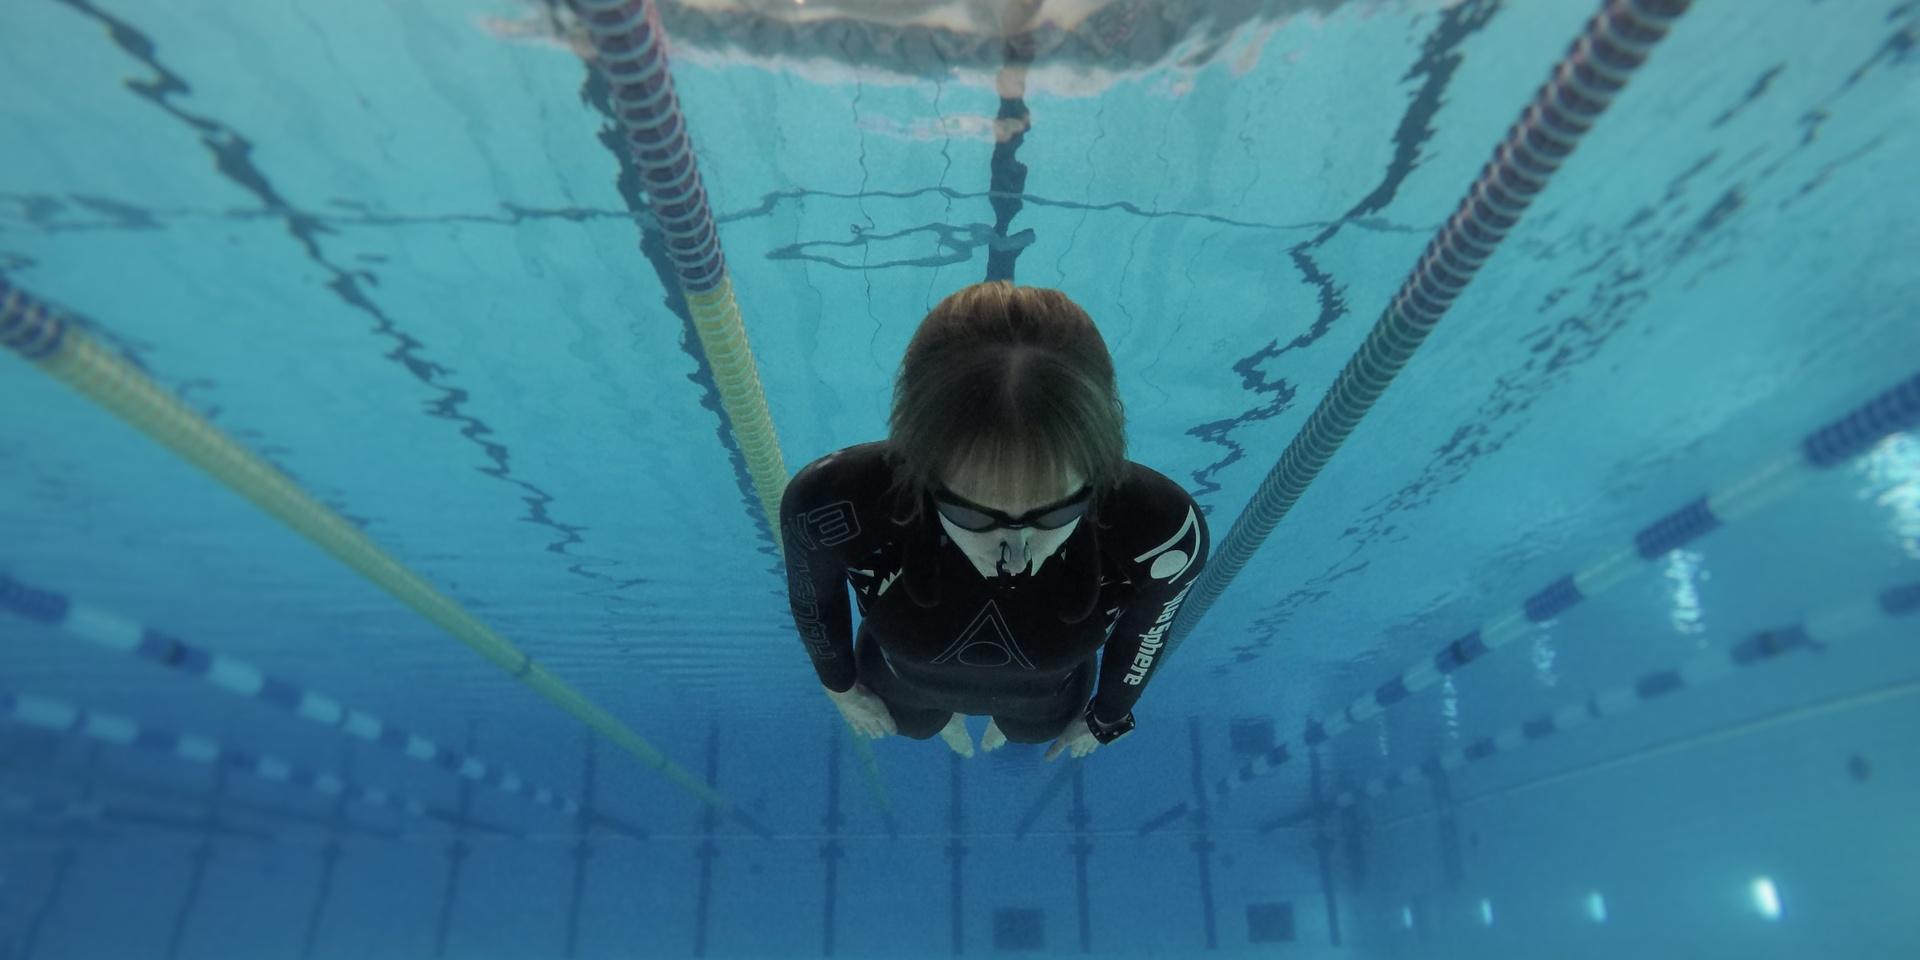 Paula Johnsson simmade nyligen 154 meter under vattnet, vilket är nytt svenskt rekord.